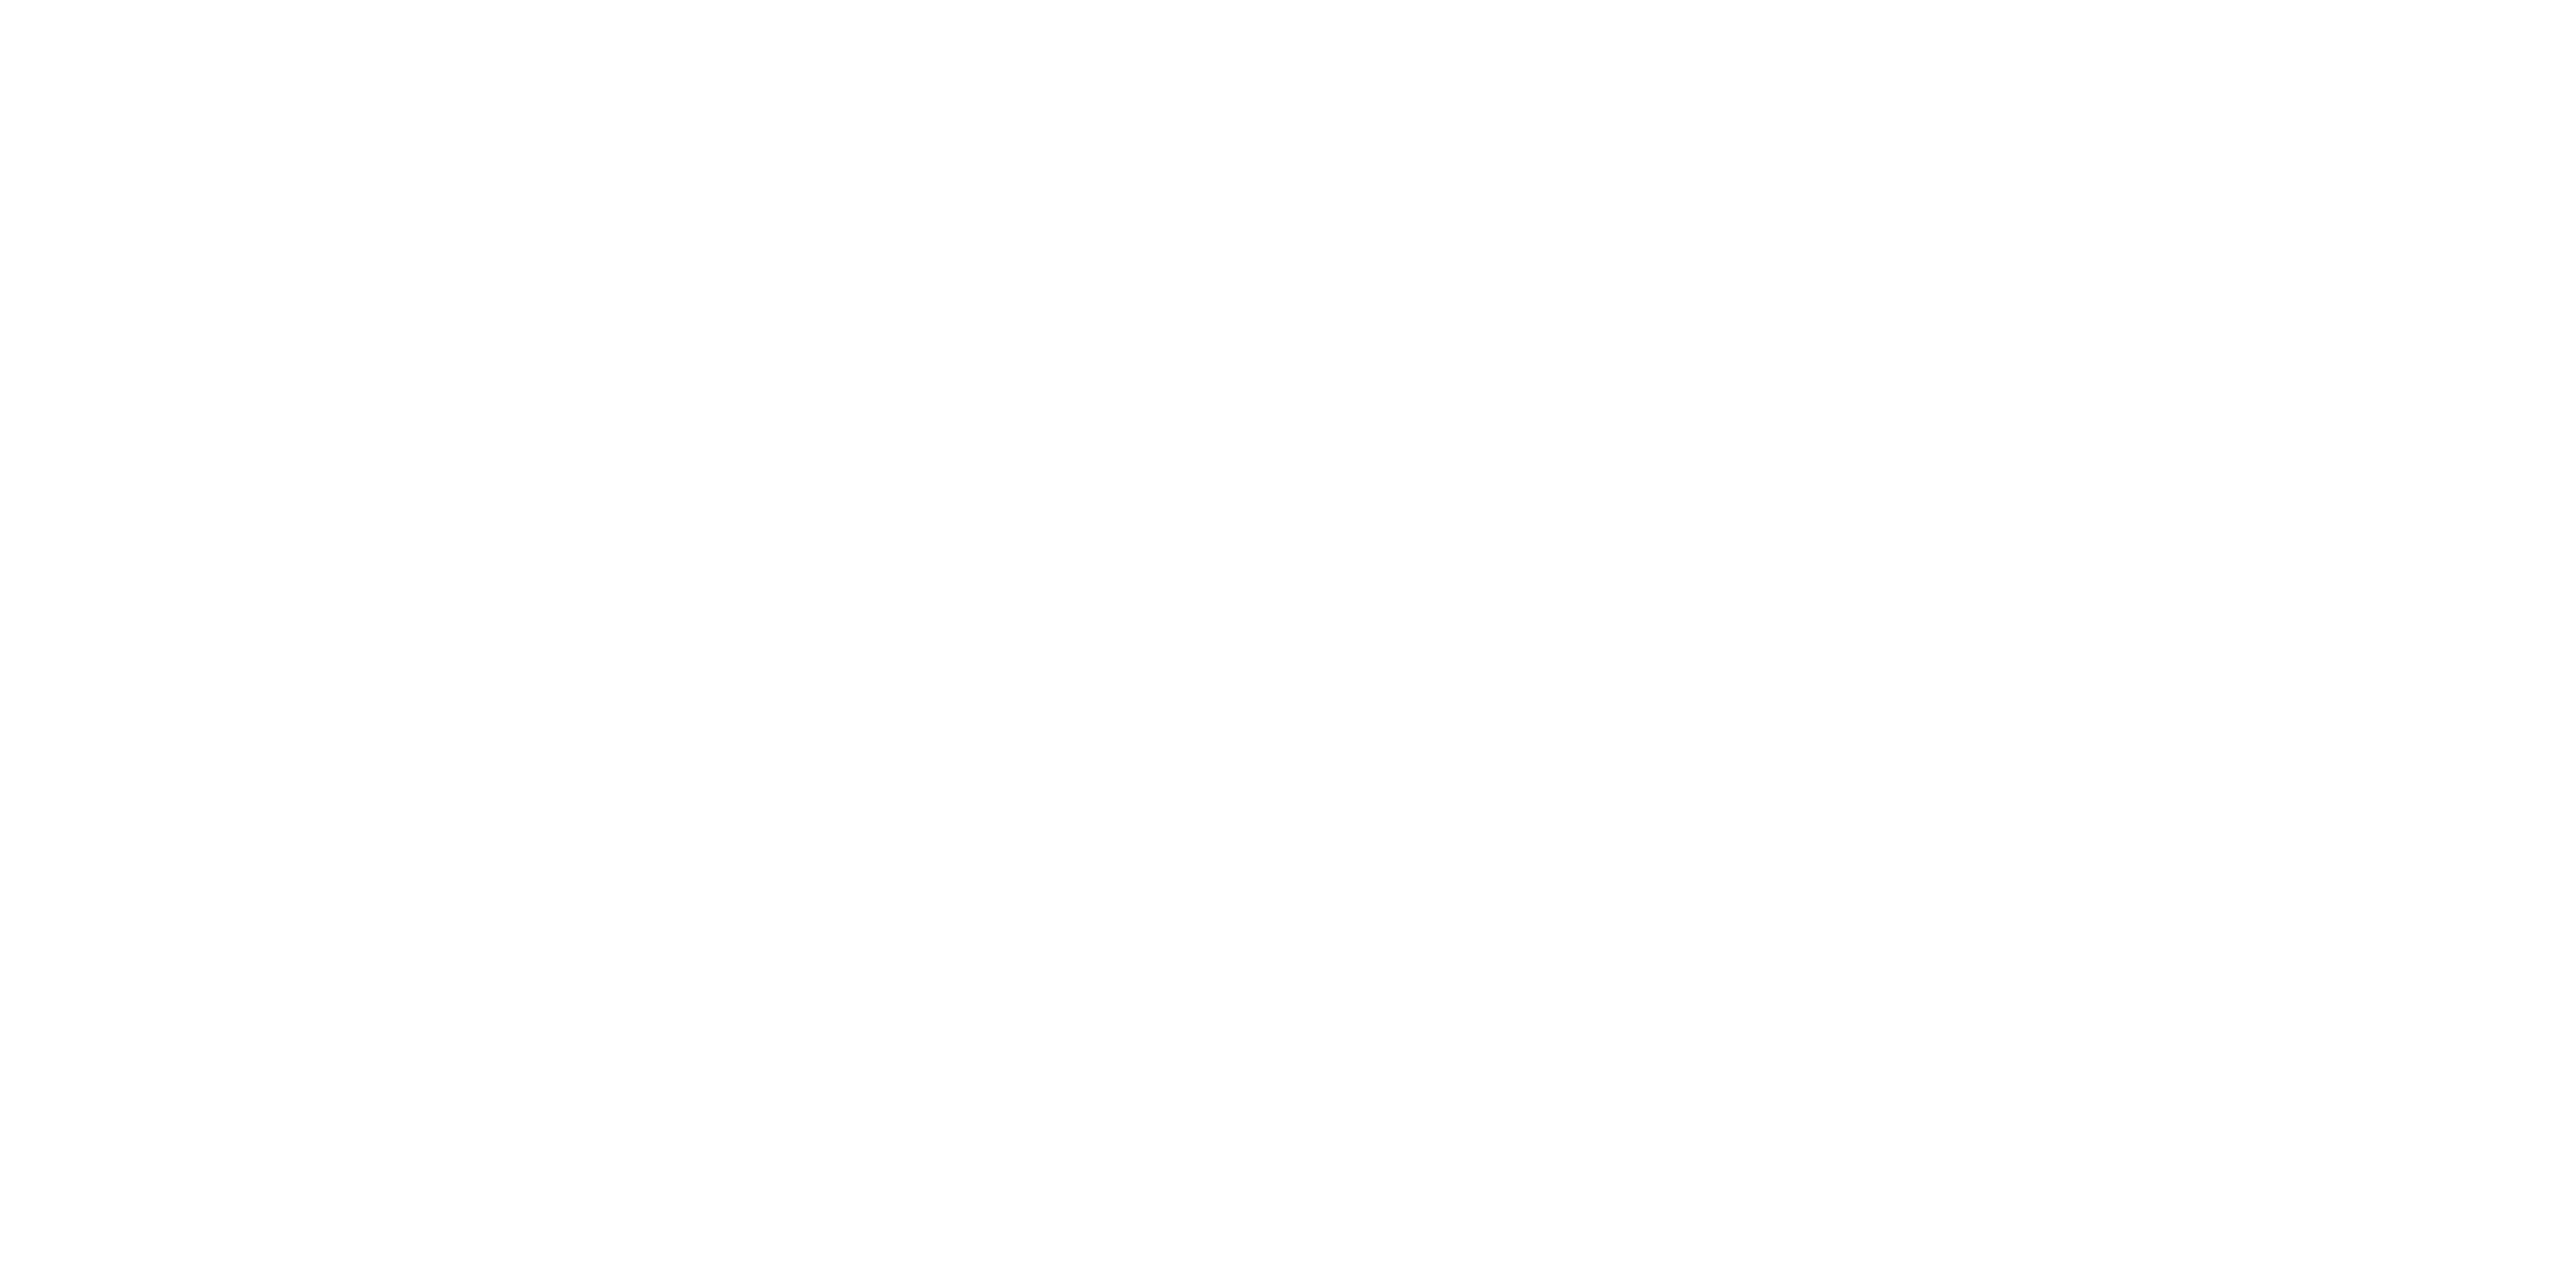 MateyMerry